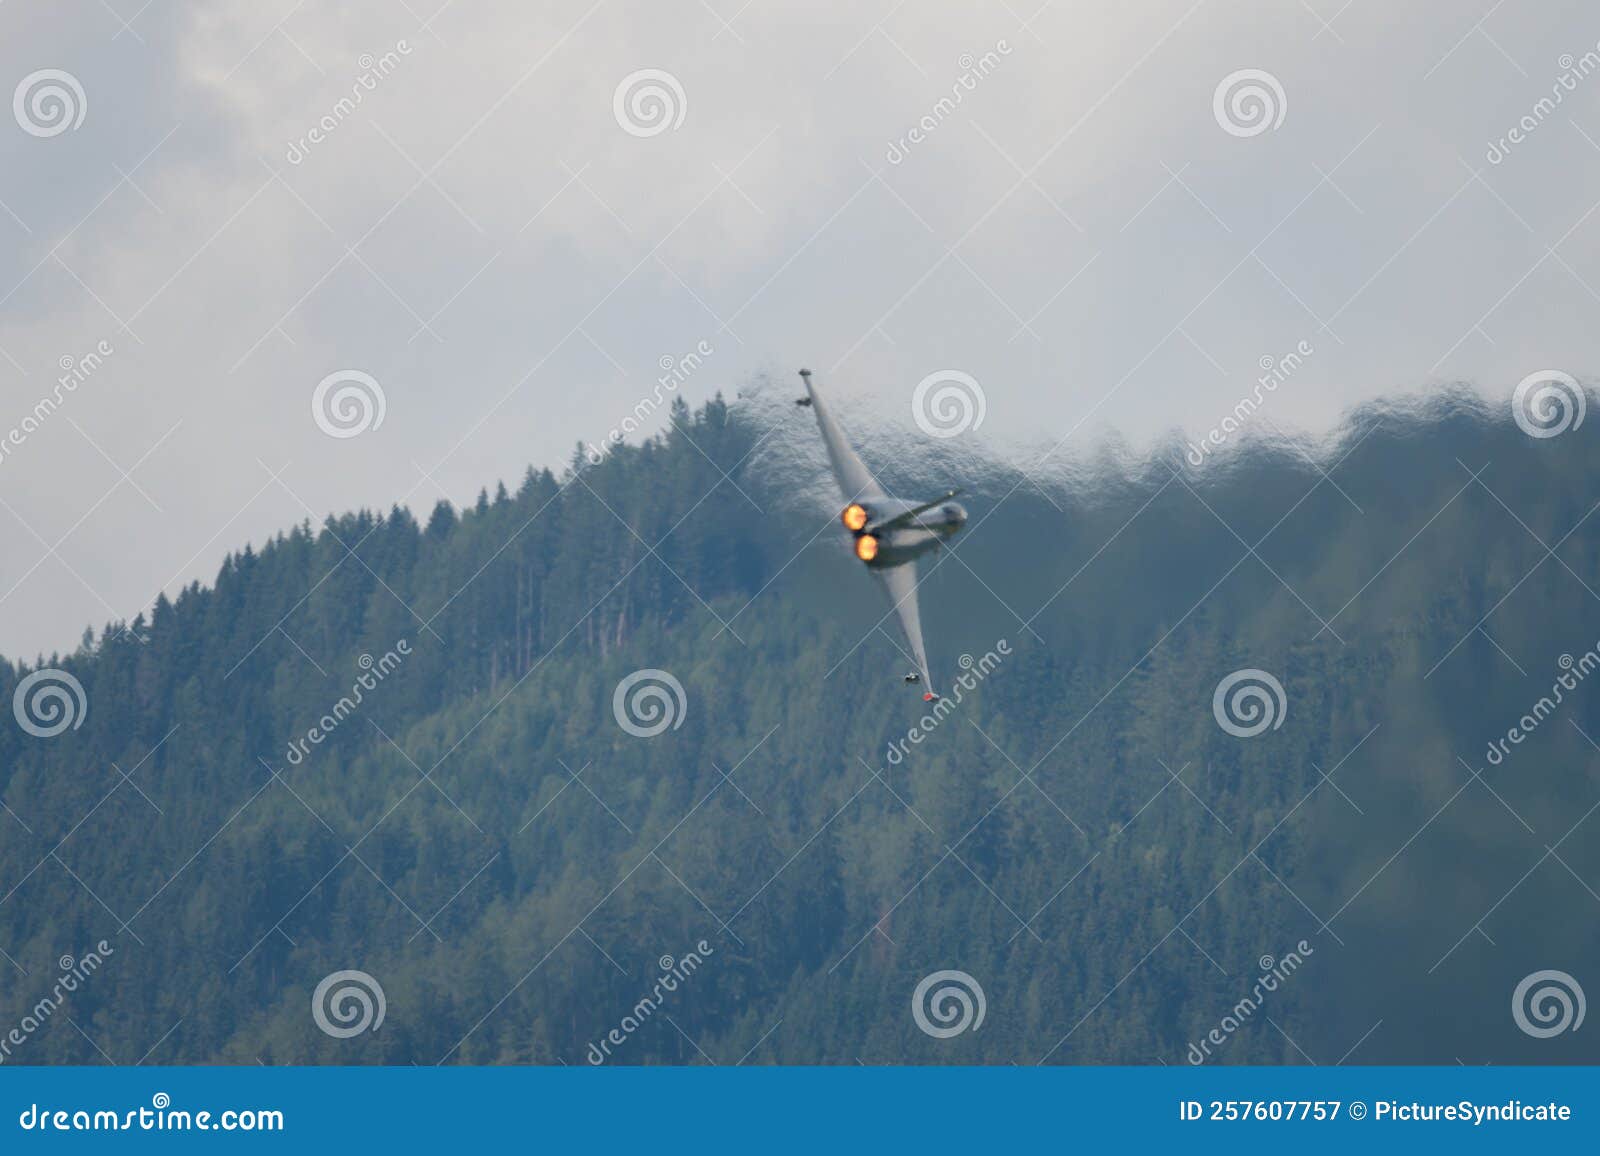 hot exhaust jet typhoon eurofighter interceptor afterburner